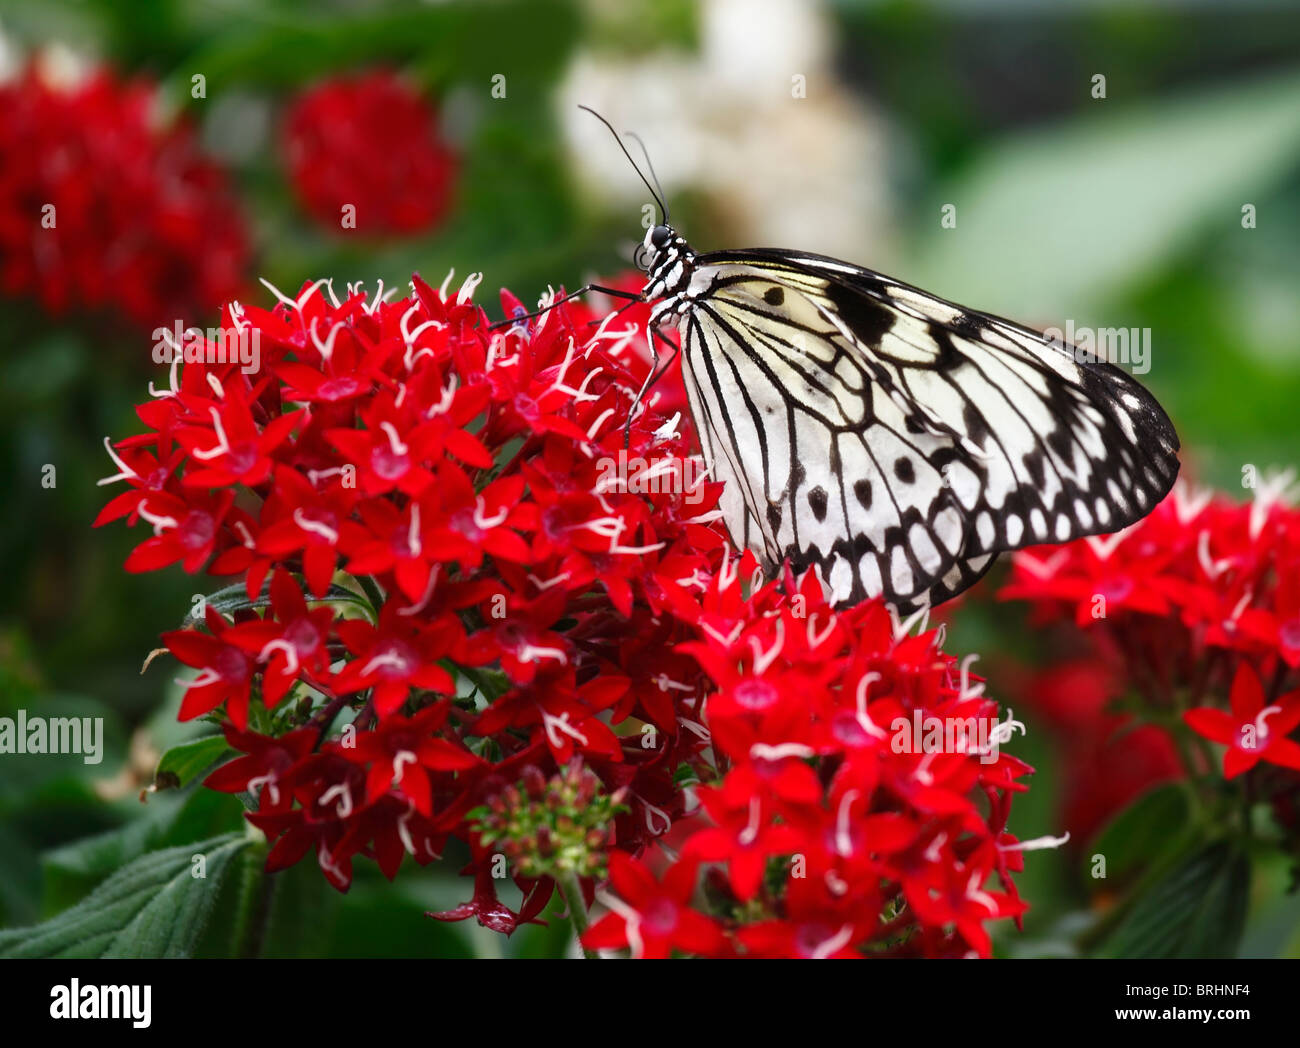 Un concentrado de forma selectiva, cerca de la imagen de una cometa de papel o papel de arroz (Idea leuconoe mariposas) sentado sobre flores rojas Foto de stock